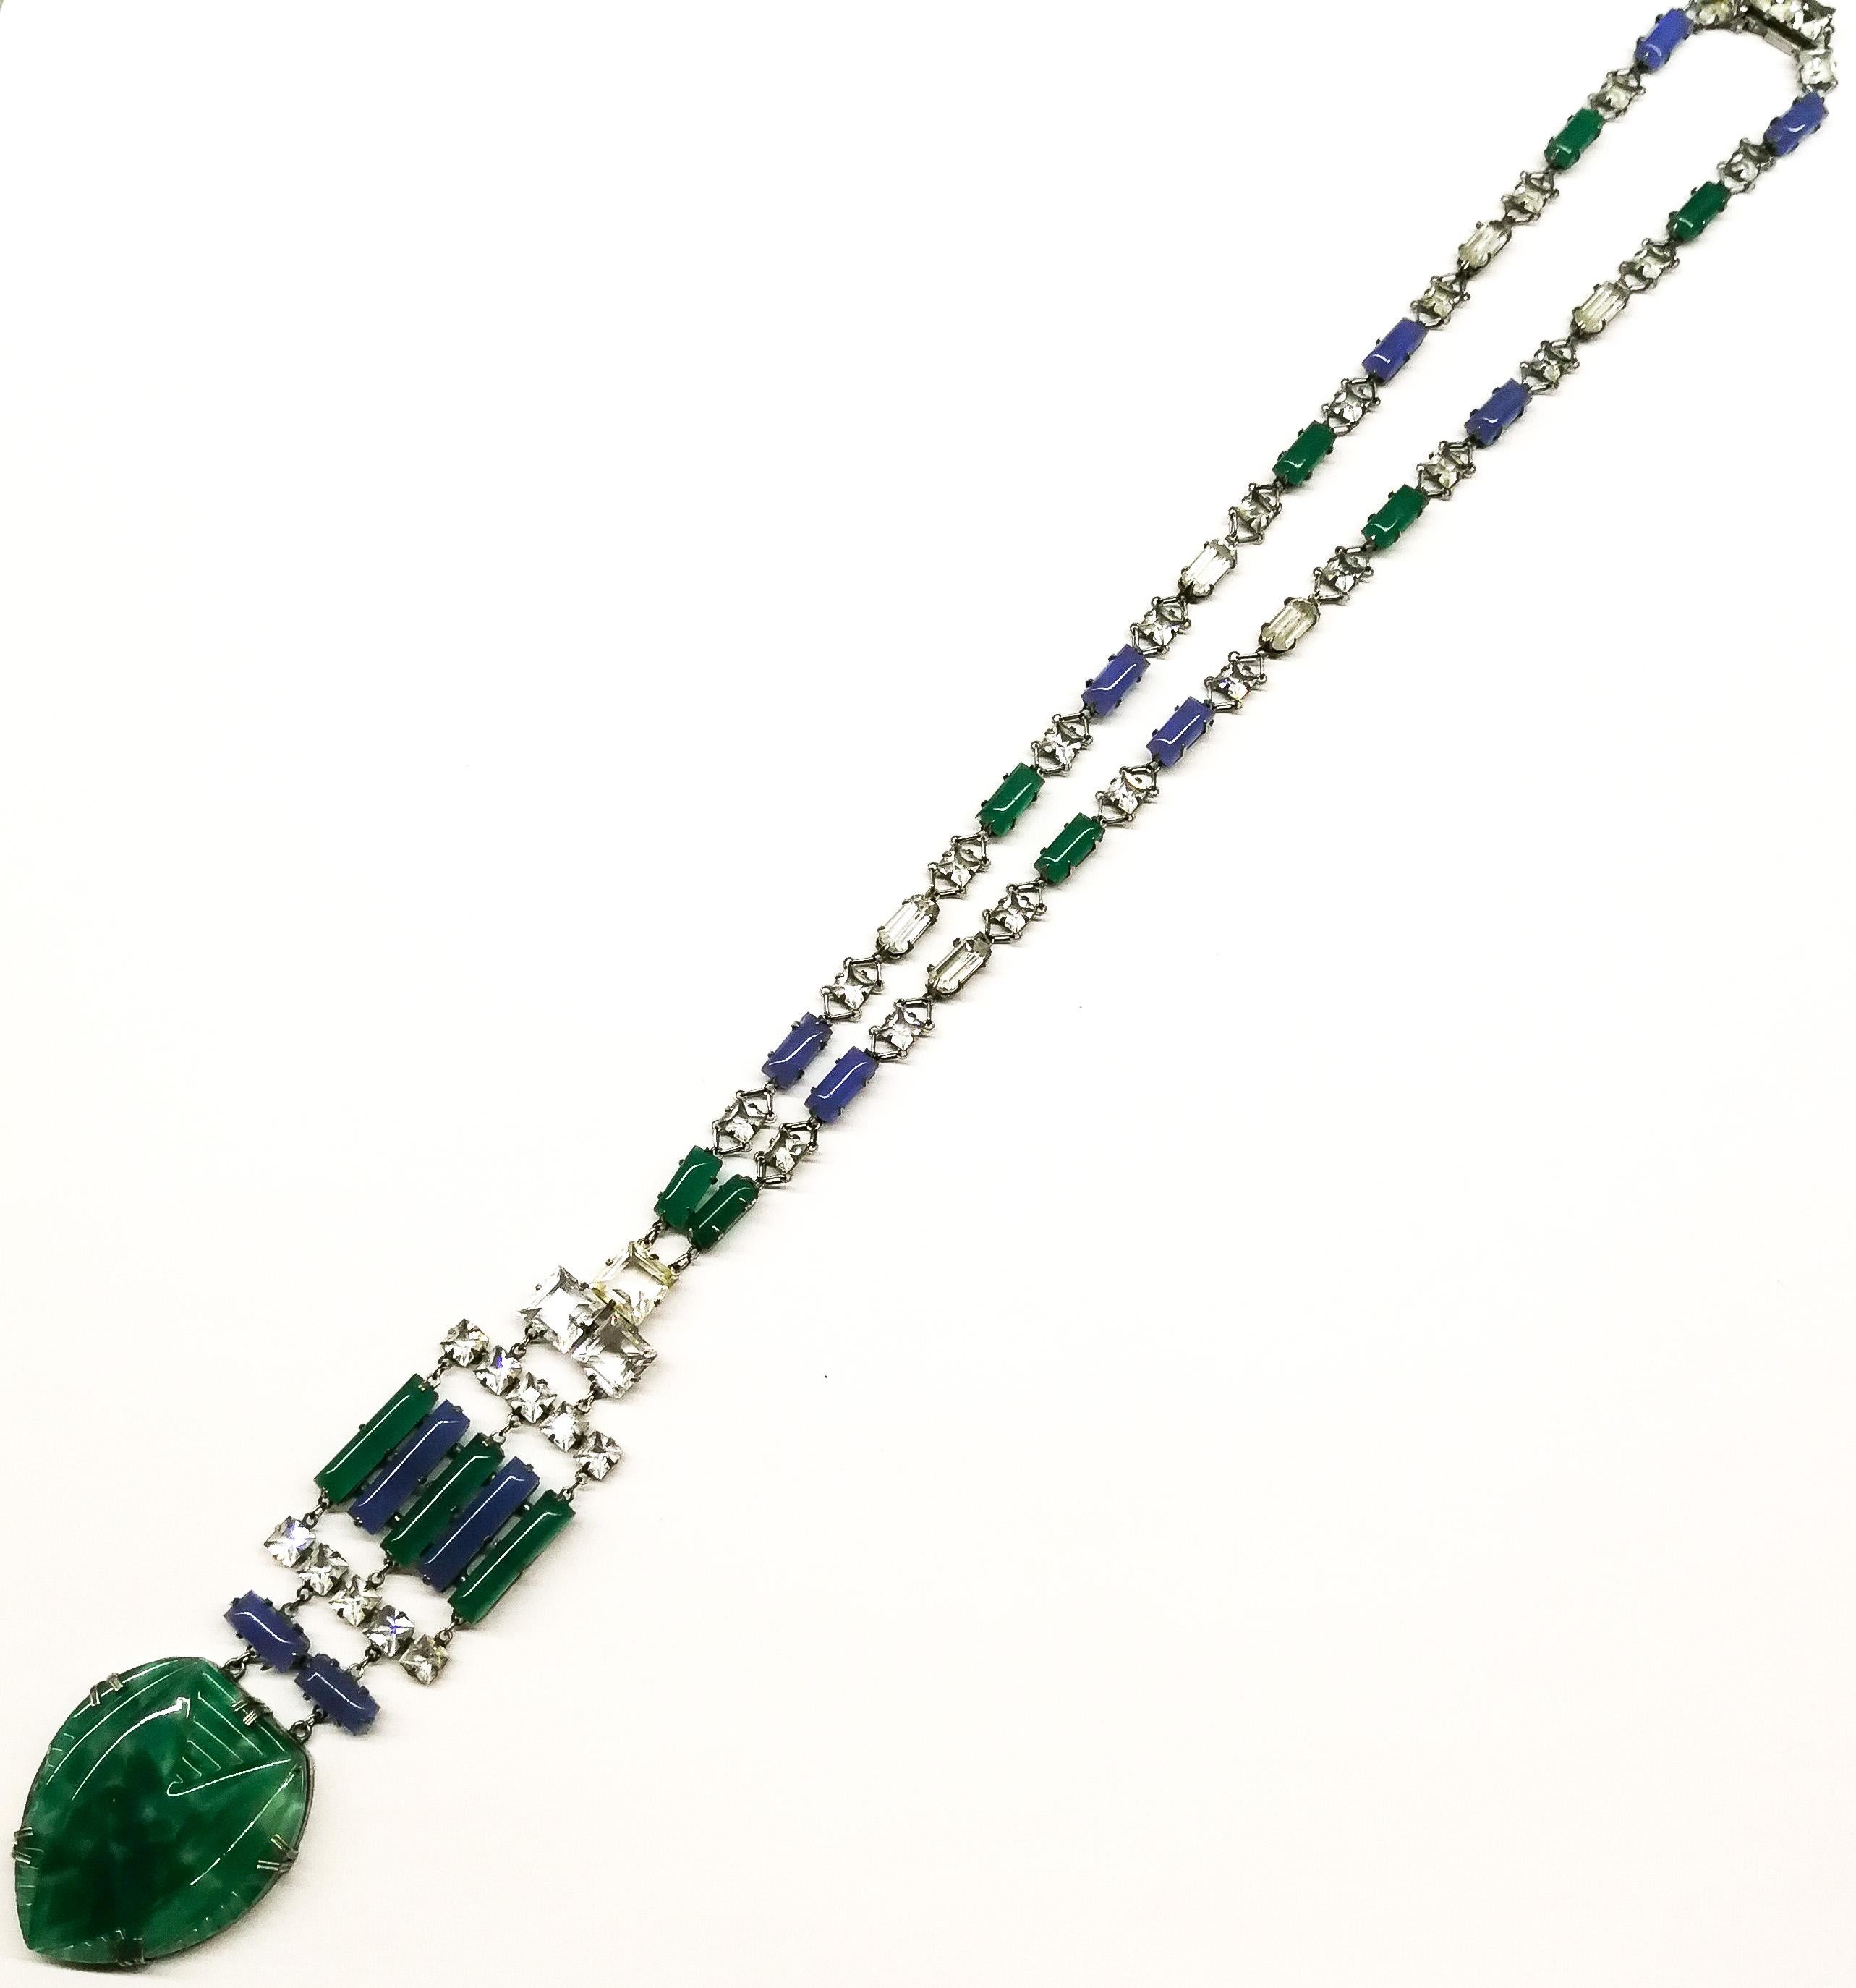 Un remarquable collier pendentif Art Déco aux couleurs et au design très caractéristiques.
Il est composé de baguettes arrondies en verre de calcédoine bleue et verte, soulignées par des pierres à facettes rectangulaires et carrées en pâte